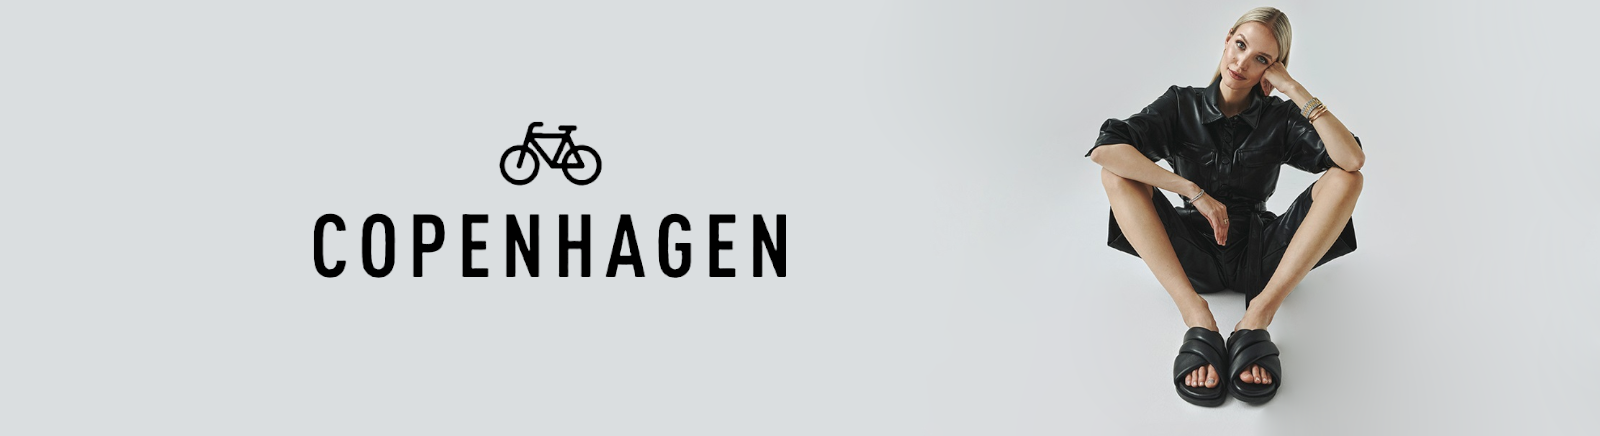 Prange: Copenhagen Slipper für Damen online kaufen online shoppen